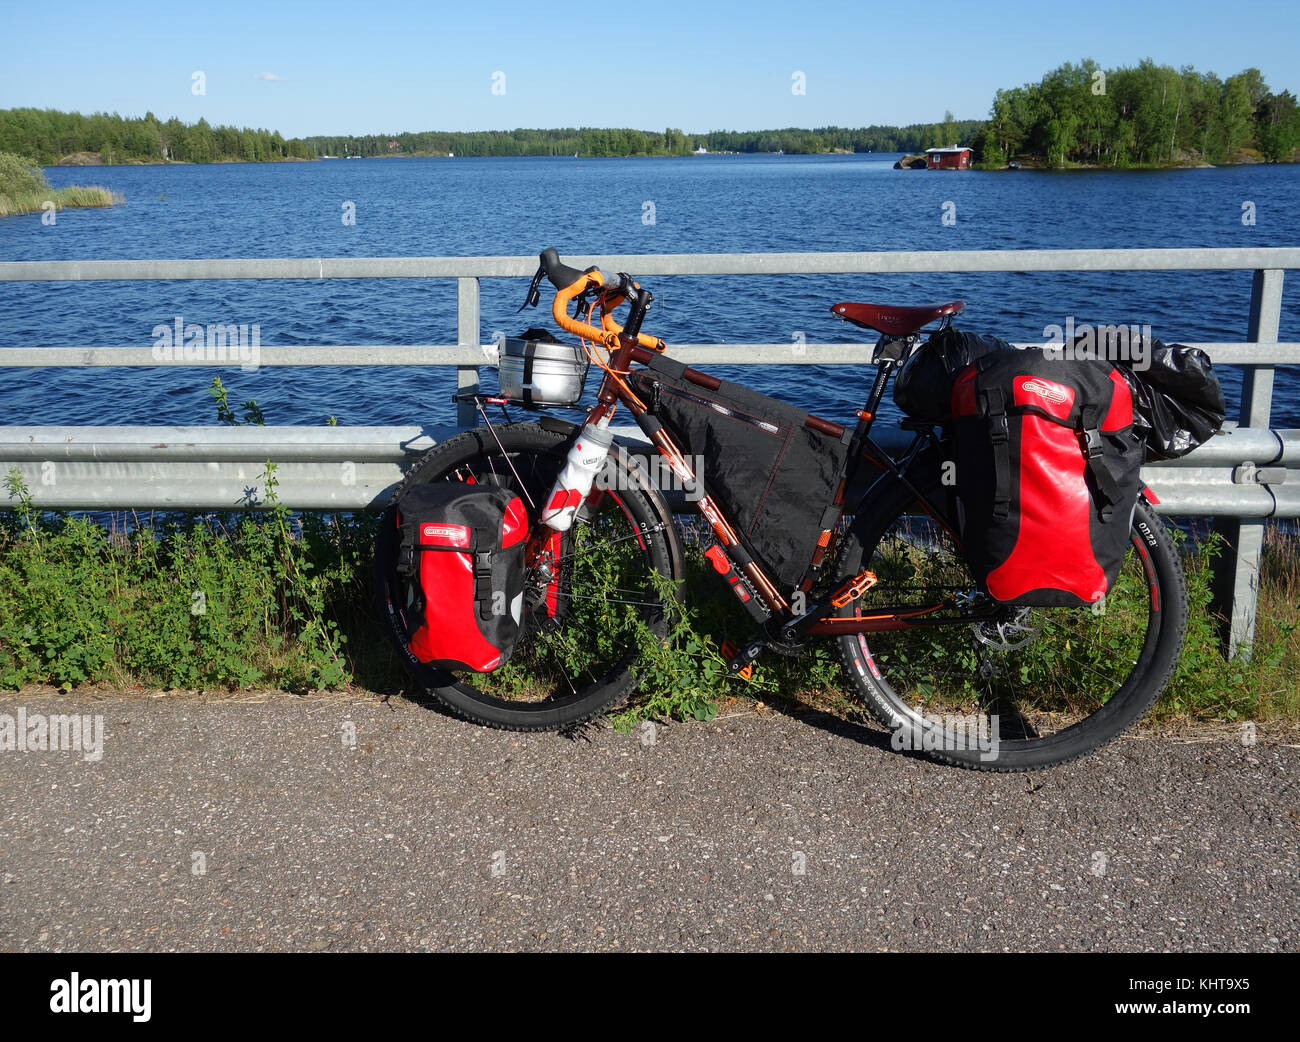 Lappeenranta, Finlandia – 29 giugno 2015: Moto d'avventura con possibilità di mountain bike e mountain bike da turismo, panieri rossi e altri tour e campeggio ge Foto Stock